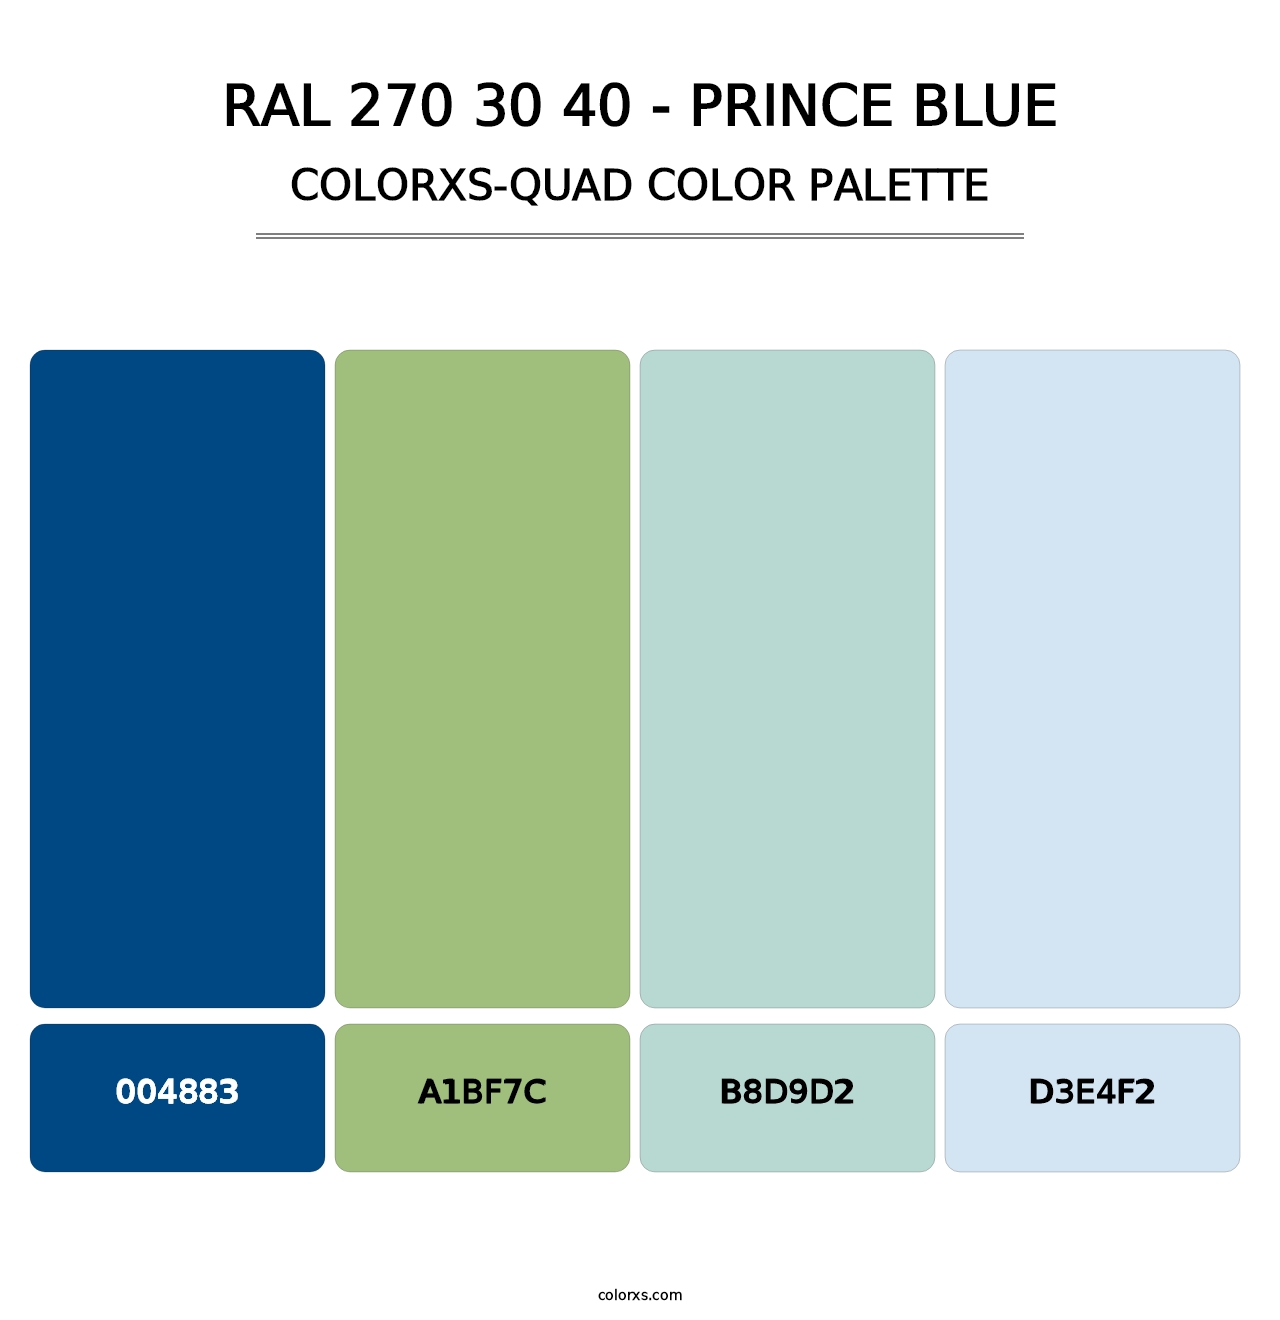 RAL 270 30 40 - Prince Blue - Colorxs Quad Palette